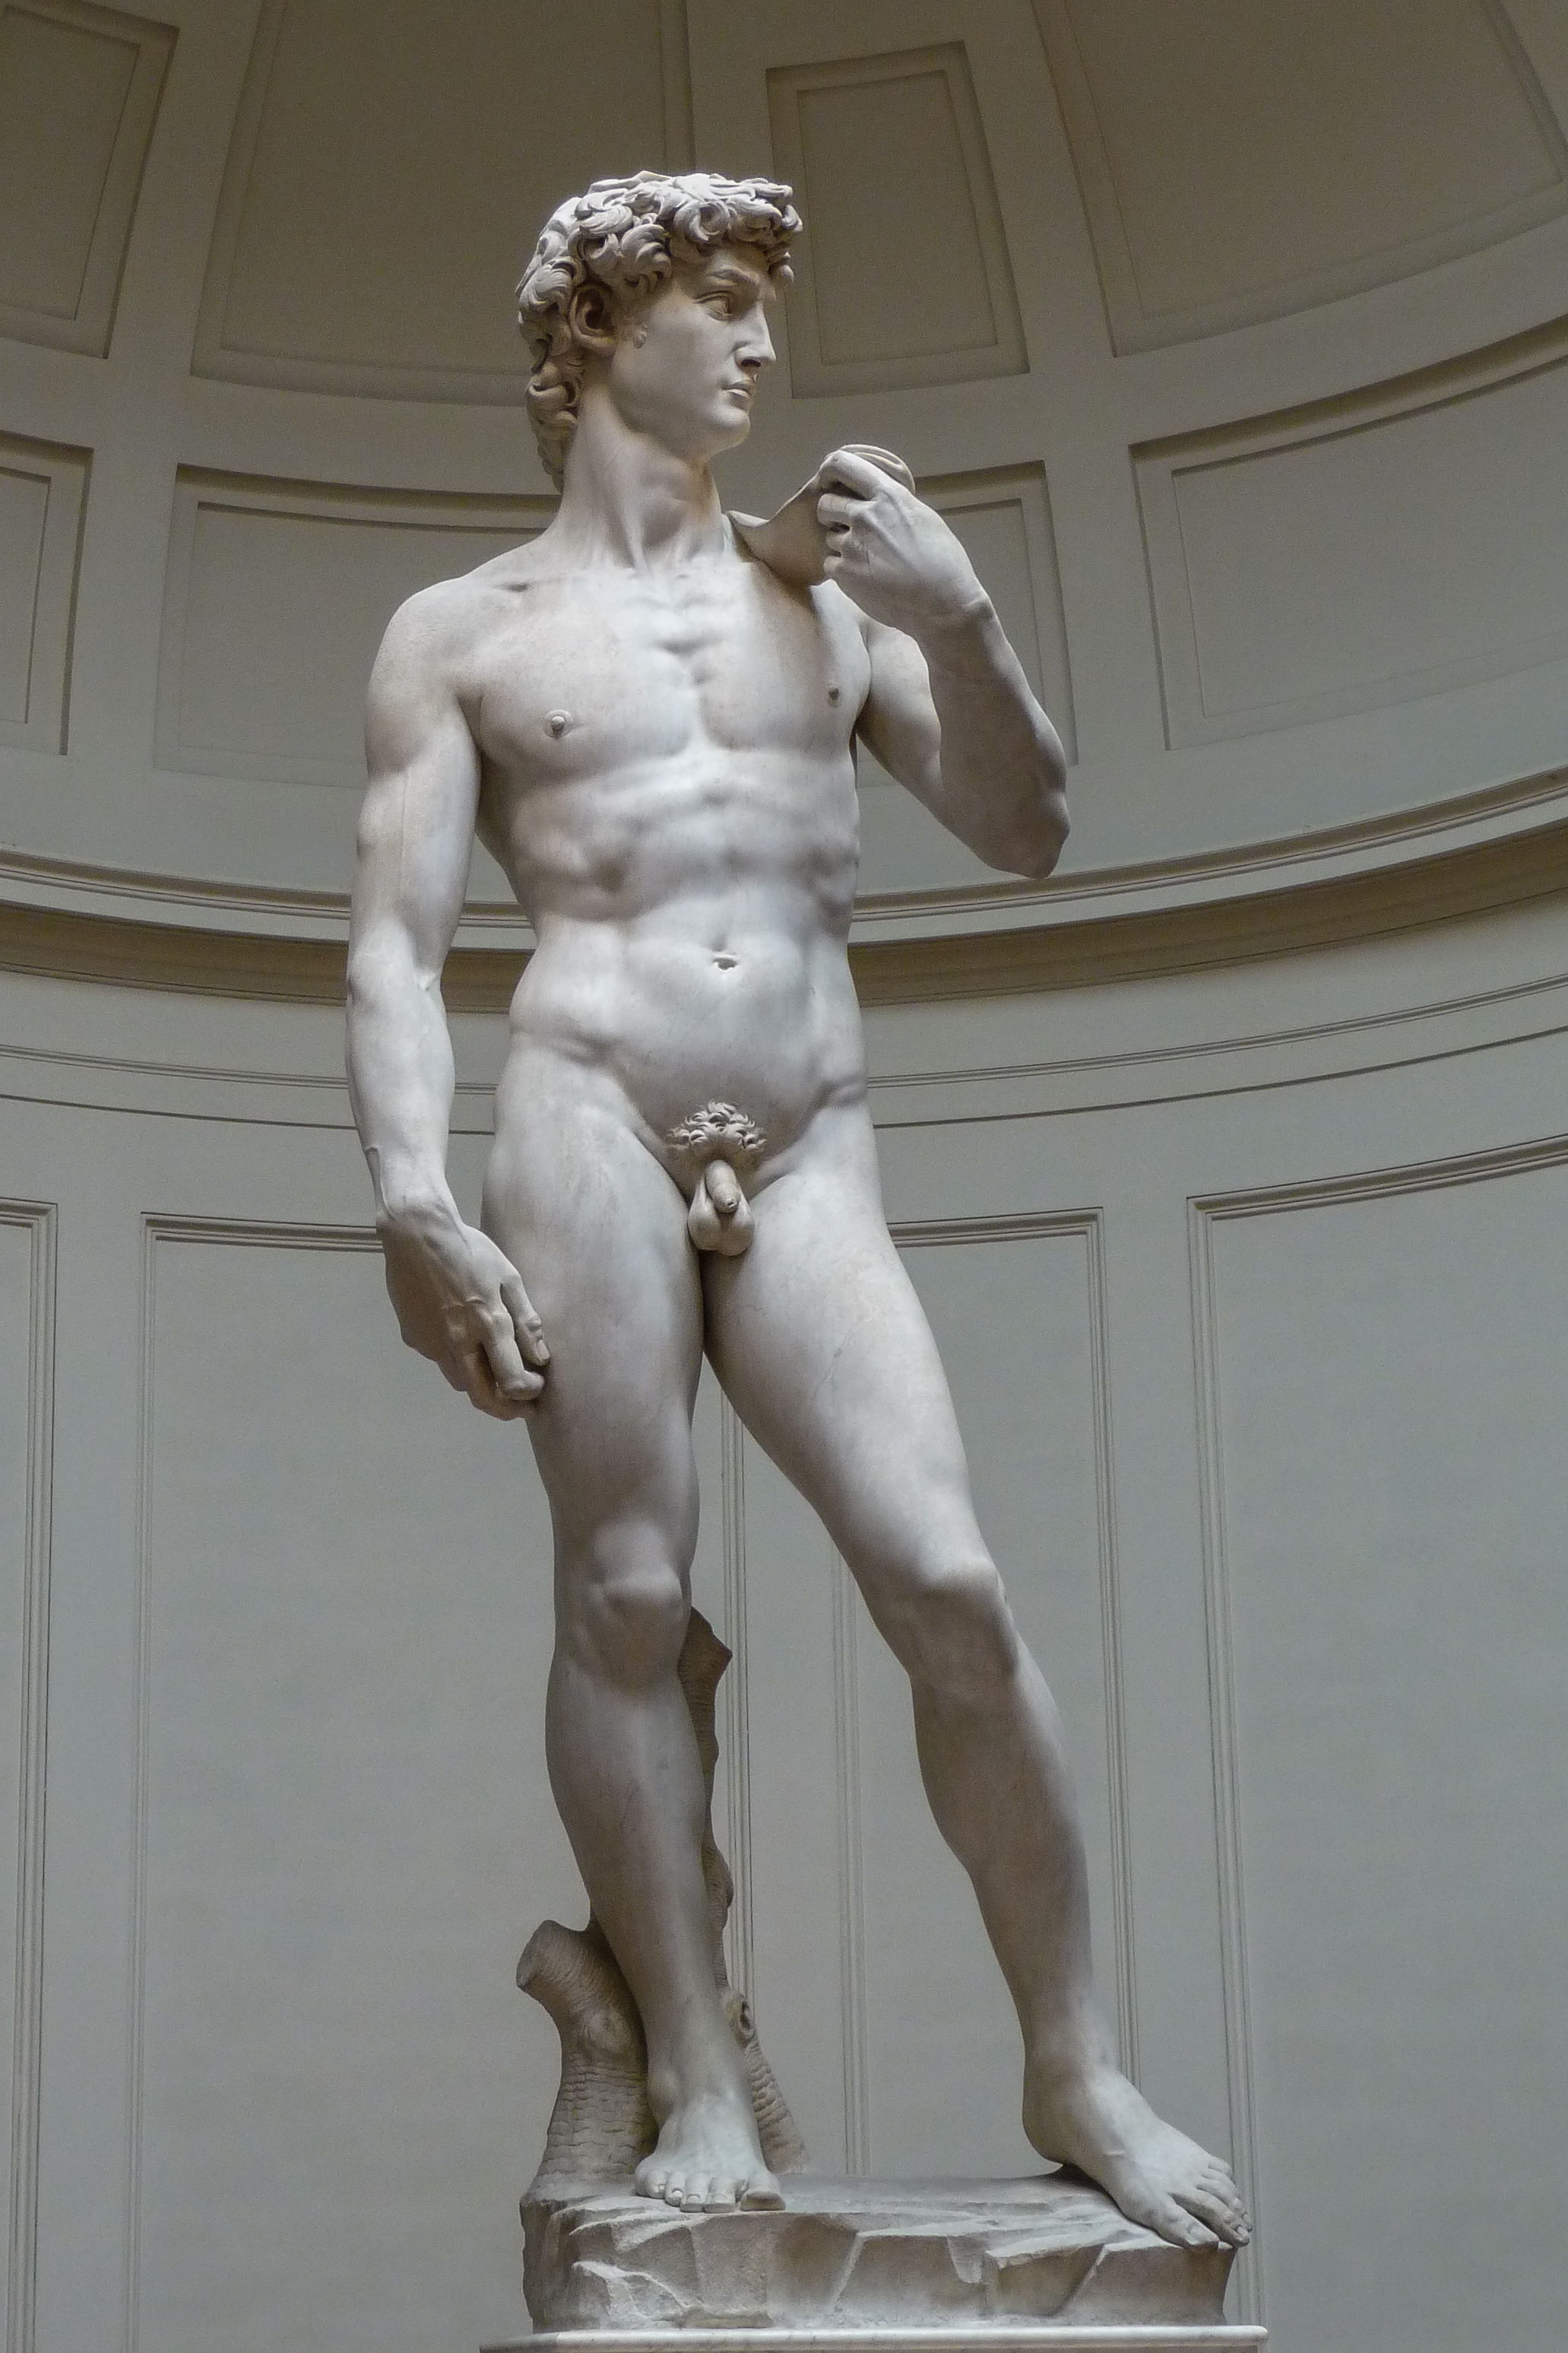 داود by  Michelangelo - 1501-1504 - 5.17 م 